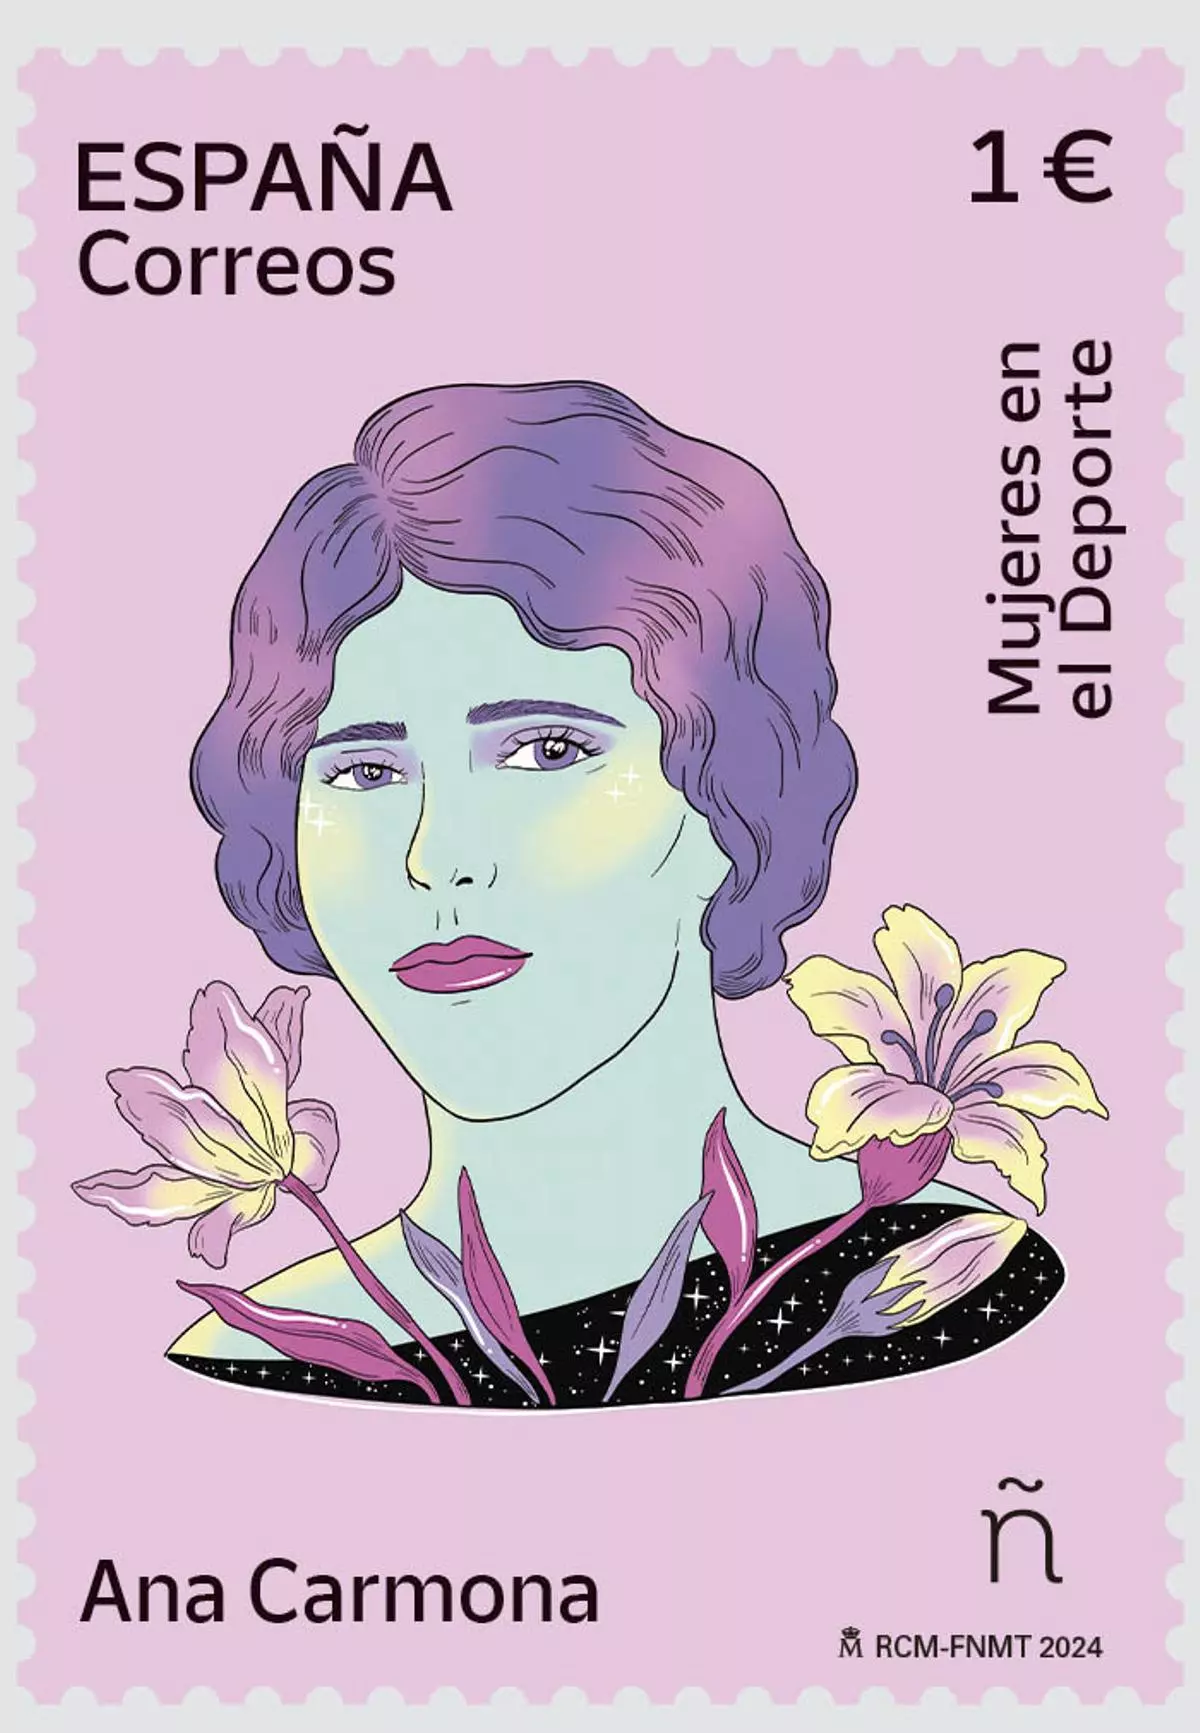 Correos emite un sello dedicado a la primera futbolista española, Ana Carmona, que vestía de hombre